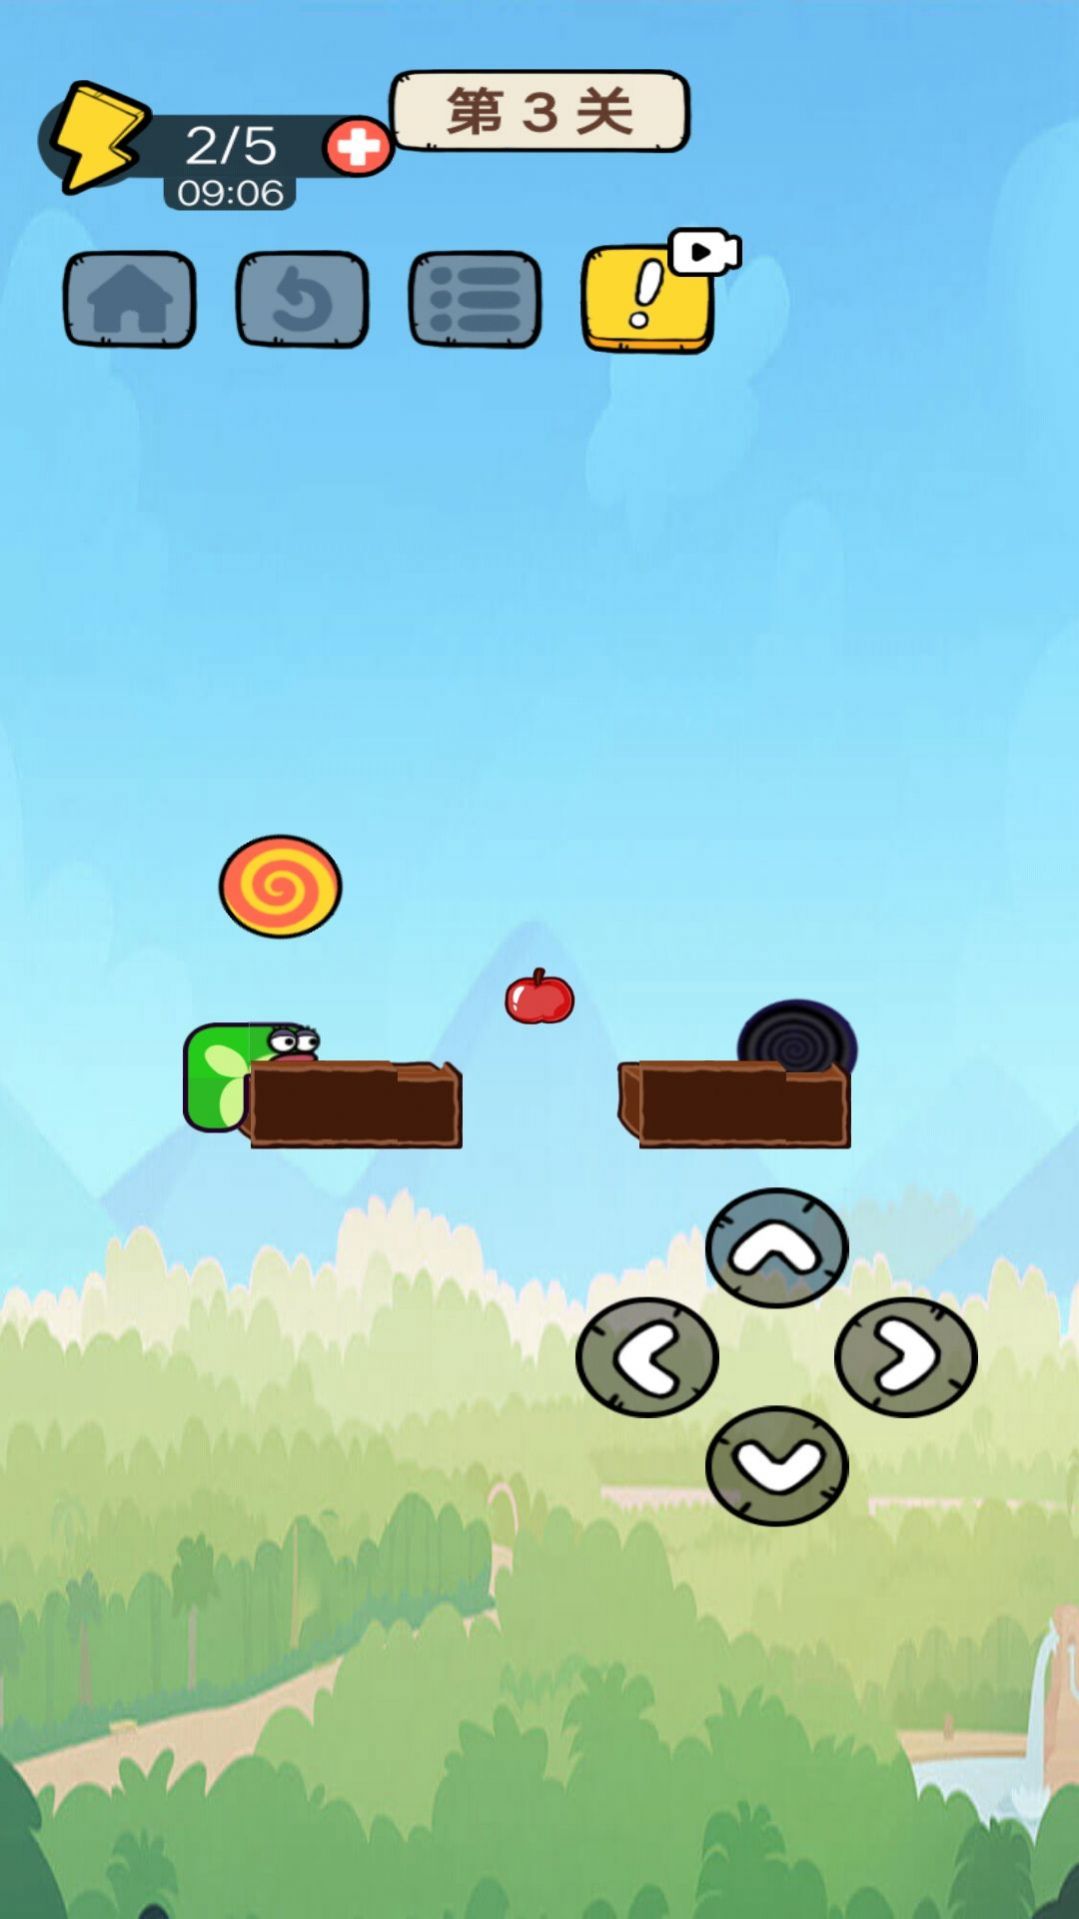 爱吃苹果的蛇蛇游戏下载,爱吃苹果的蛇蛇小游戏官方版 v1